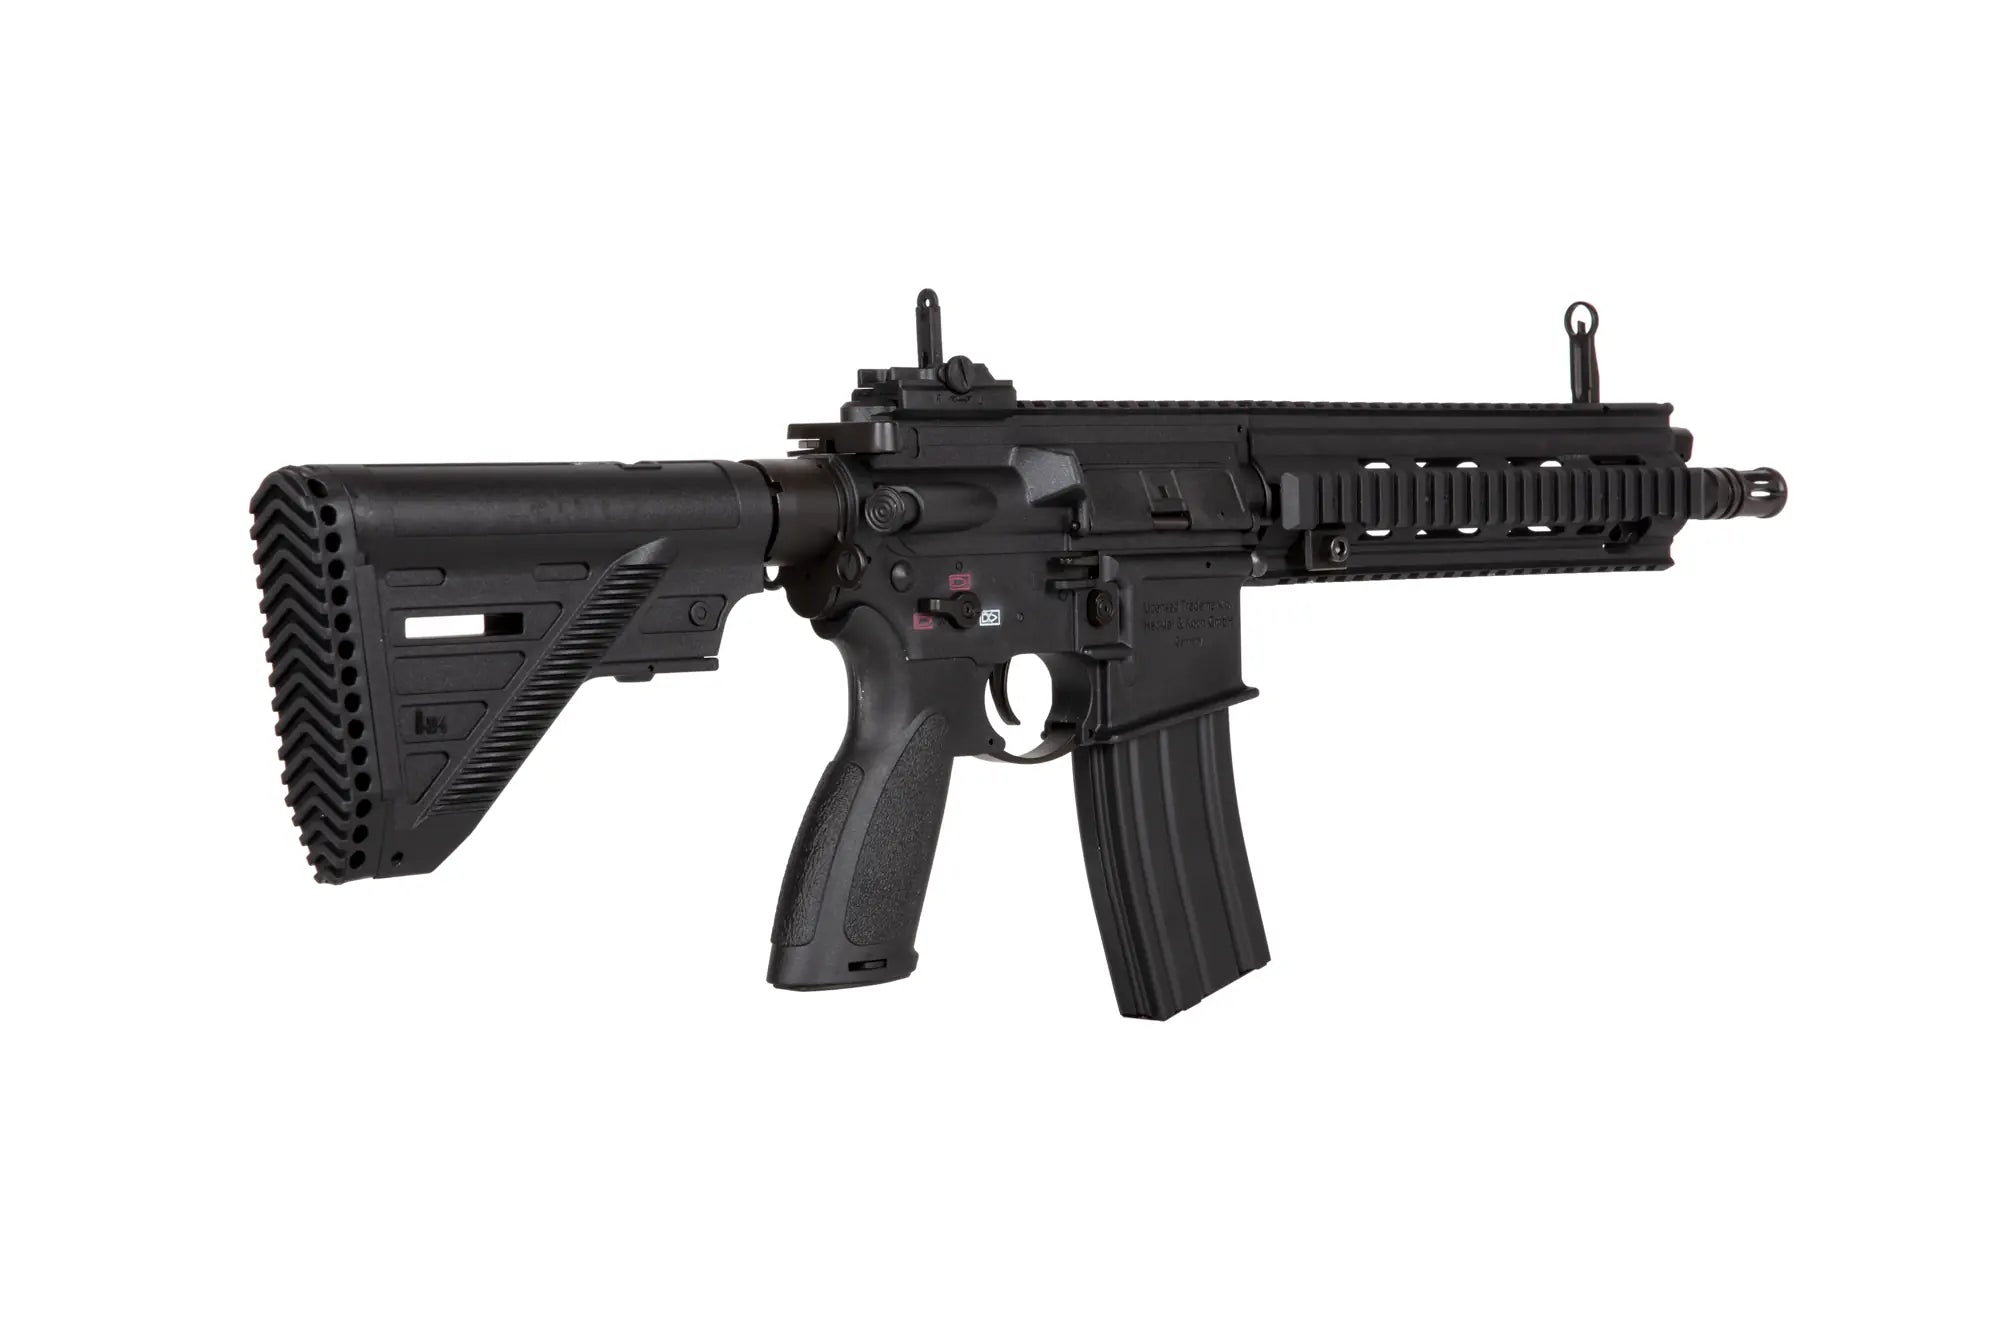 Aisoft HK416A5 assault rifle